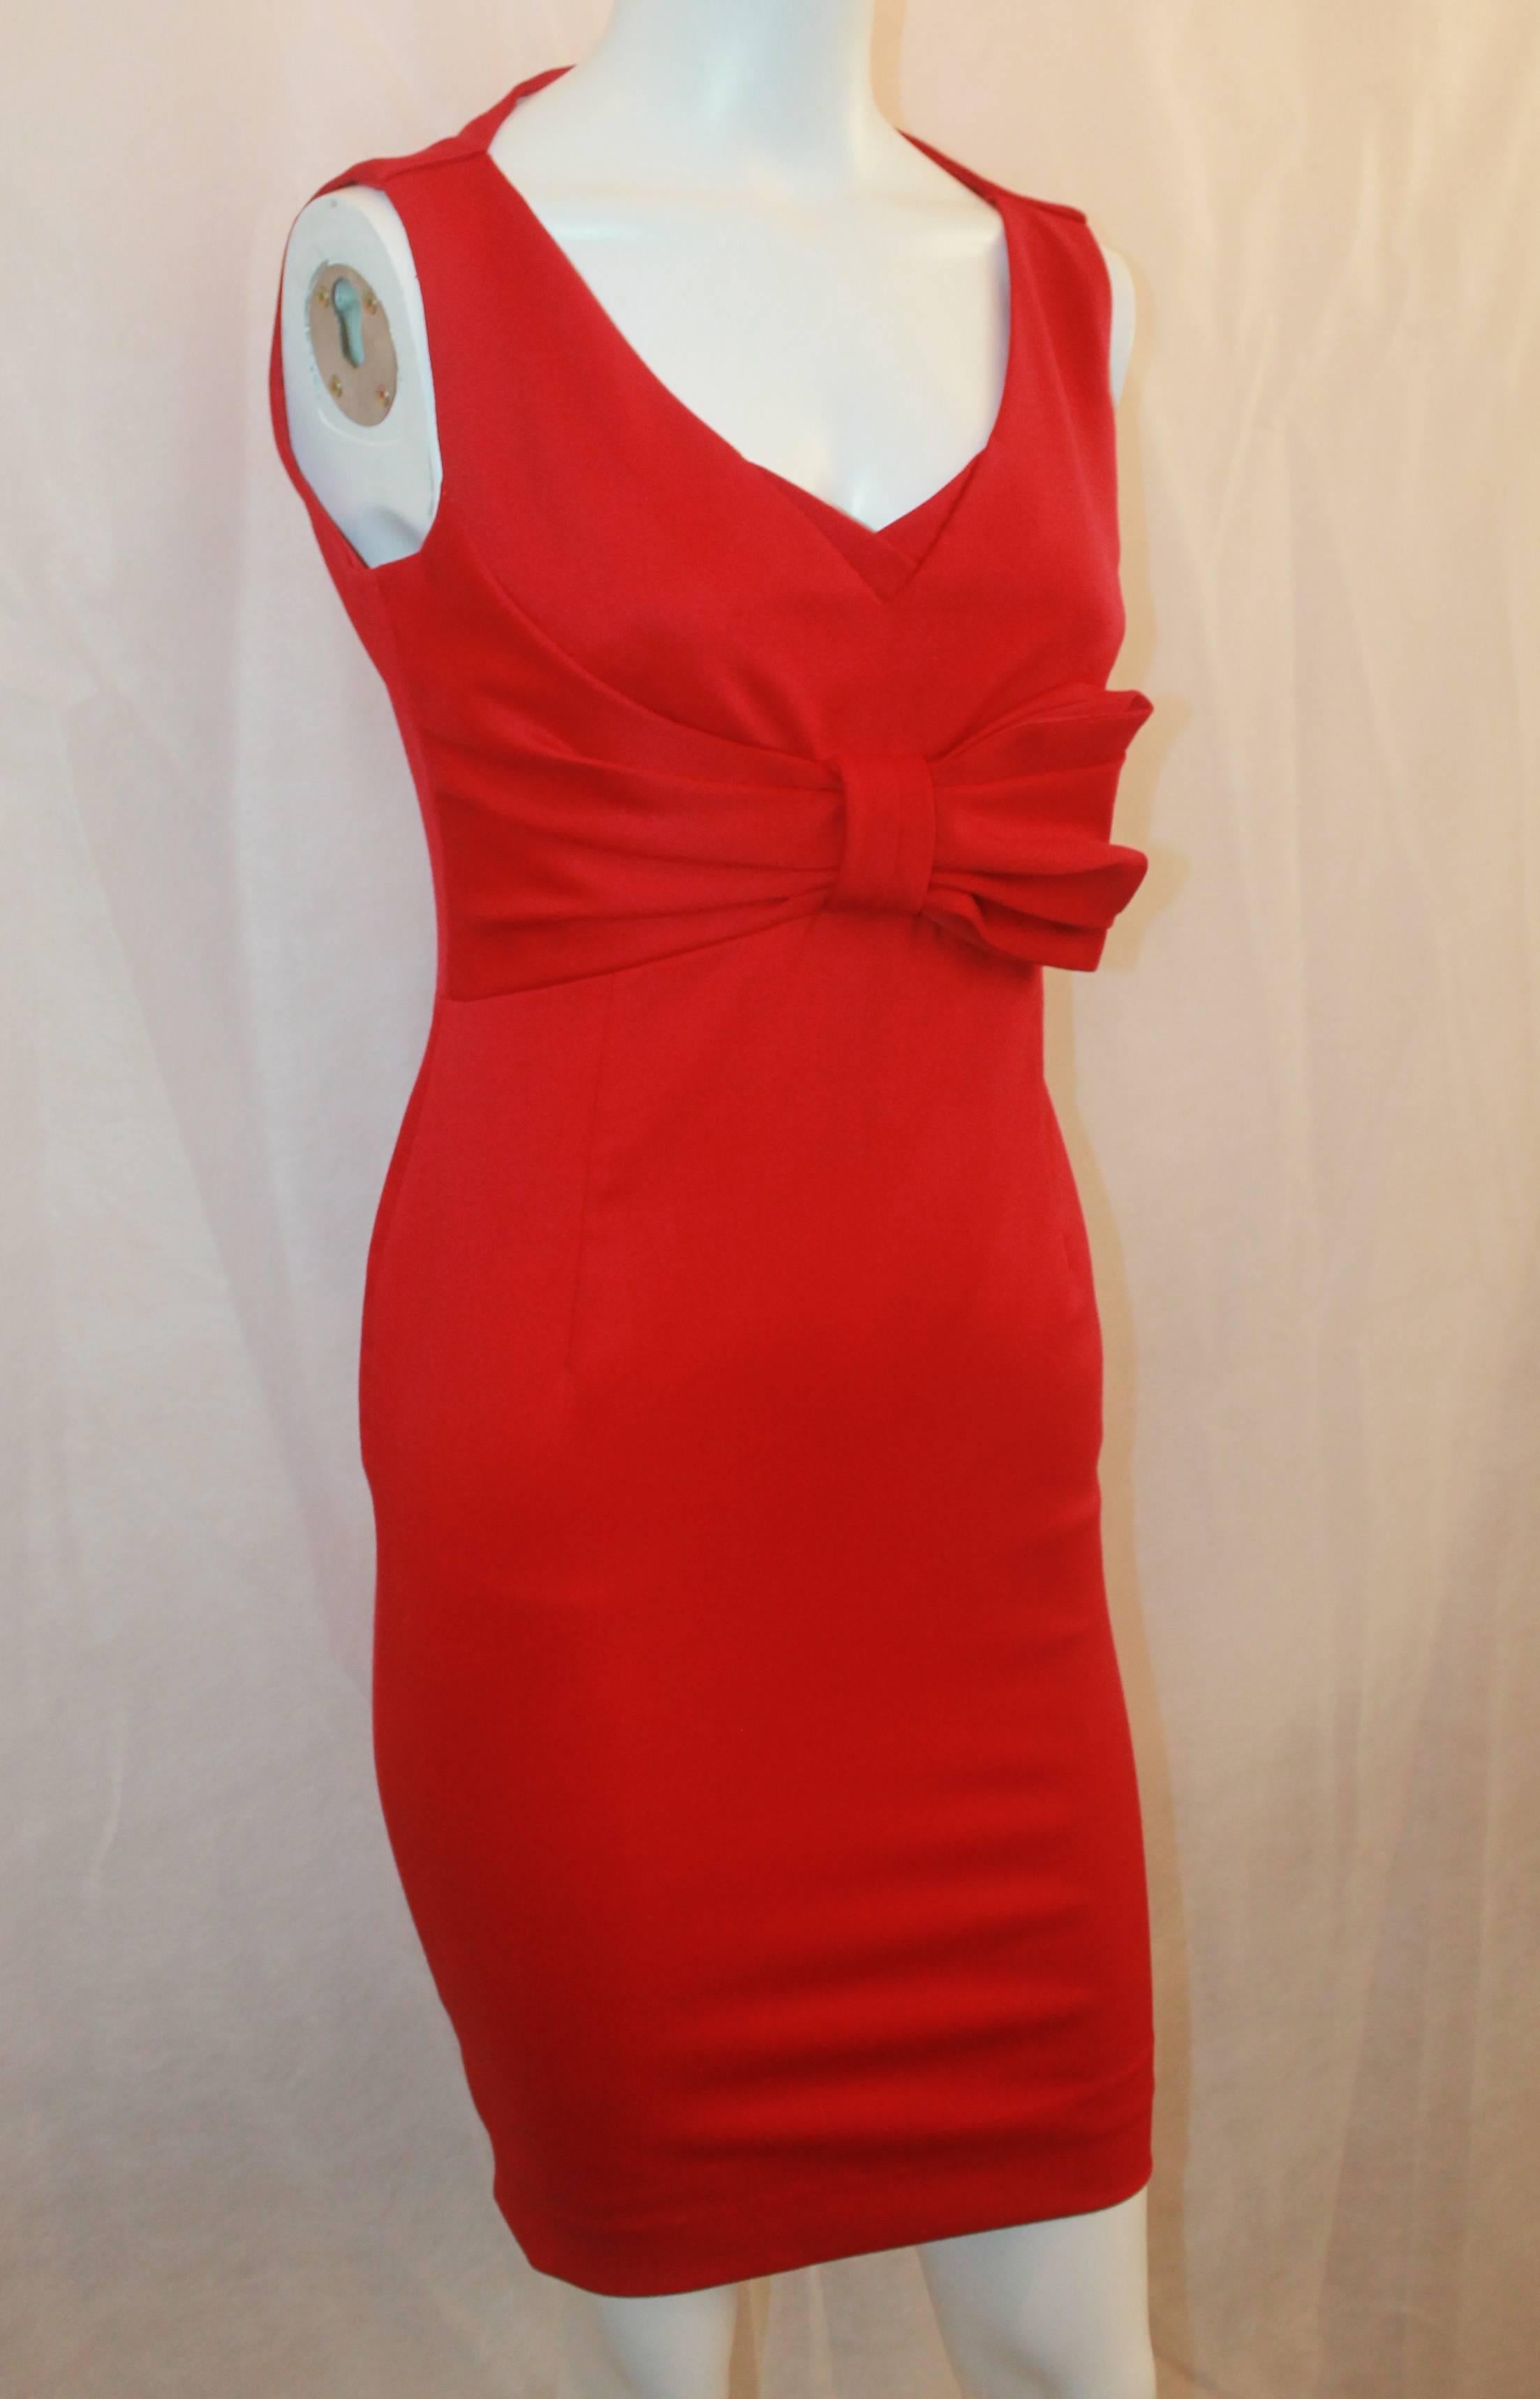 Valentino Techno Couture Red Sleeveless Dress with Bow - 4. Cette magnifique robe est en excellent état et constitue une pièce sexy et élégante parfaite. Elle présente une encolure en V, un nœud sur le devant et un corsage ajusté. La robe est un